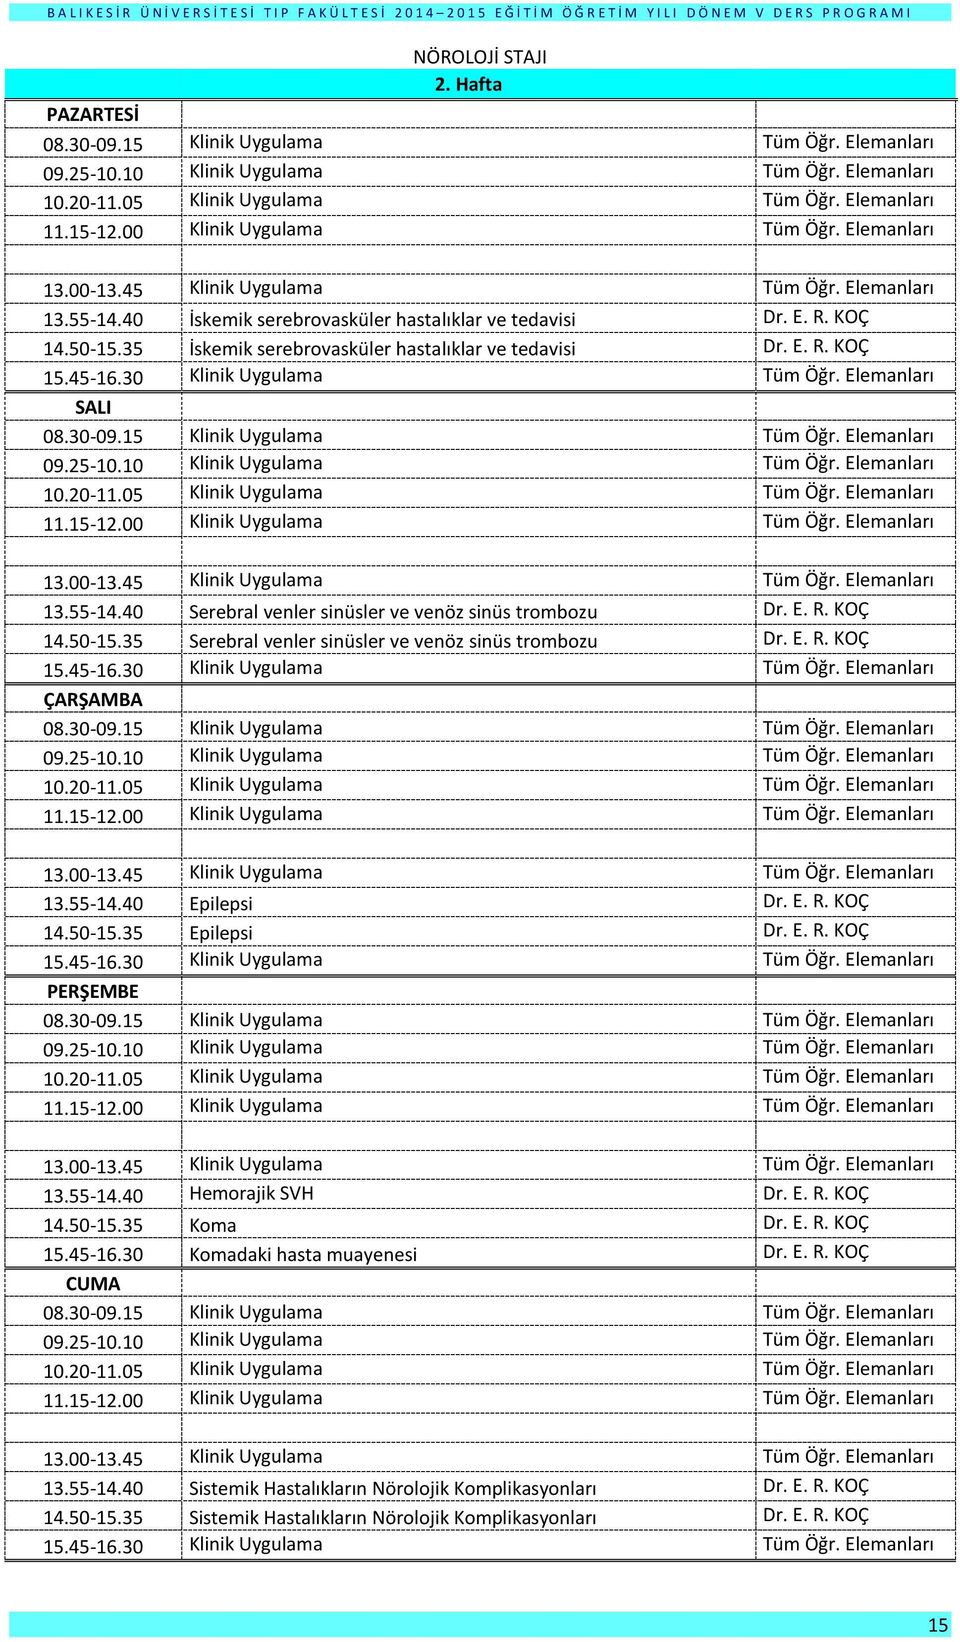 E. R. KOÇ 14.50-15.35 Epilepsi Dr. E. R. KOÇ 13.55-14.40 Hemorajik SVH Dr. E. R. KOÇ 14.50-15.35 Koma Dr. E. R. KOÇ 15.45-16.30 Komadaki hasta muayenesi Dr. E. R. KOÇ 13.55-14.40 Sistemik Hastalıkların Nörolojik Komplikasyonları Dr.